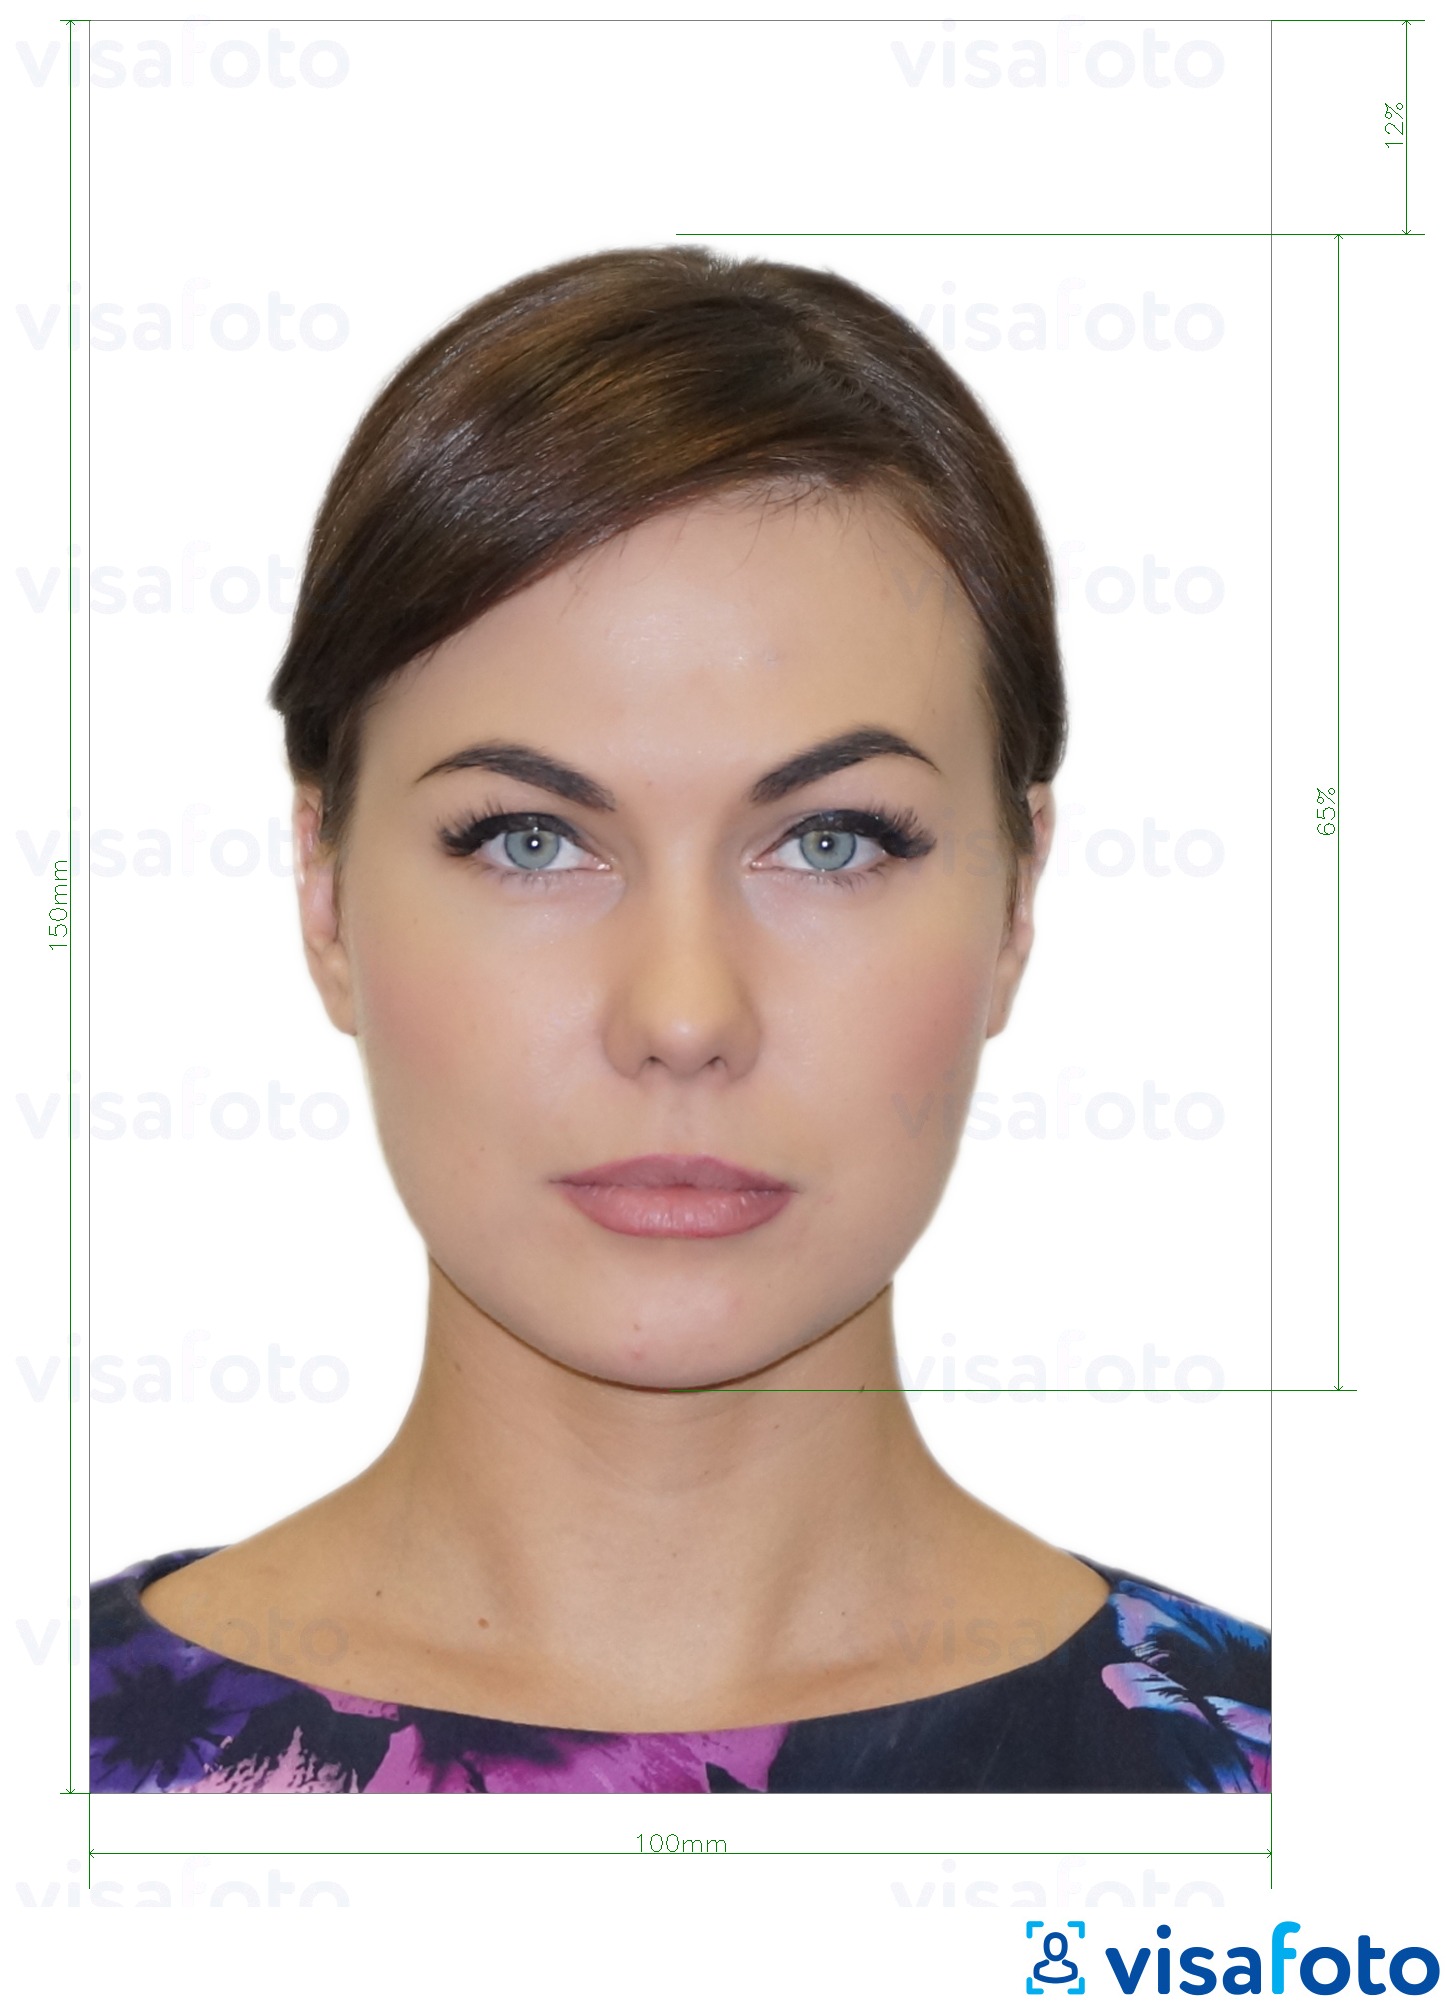 Exemplo de foto para Cartão de Identificação da Moldávia (Buletin de identitate) 10x15 cm com especificação exata de dimensão